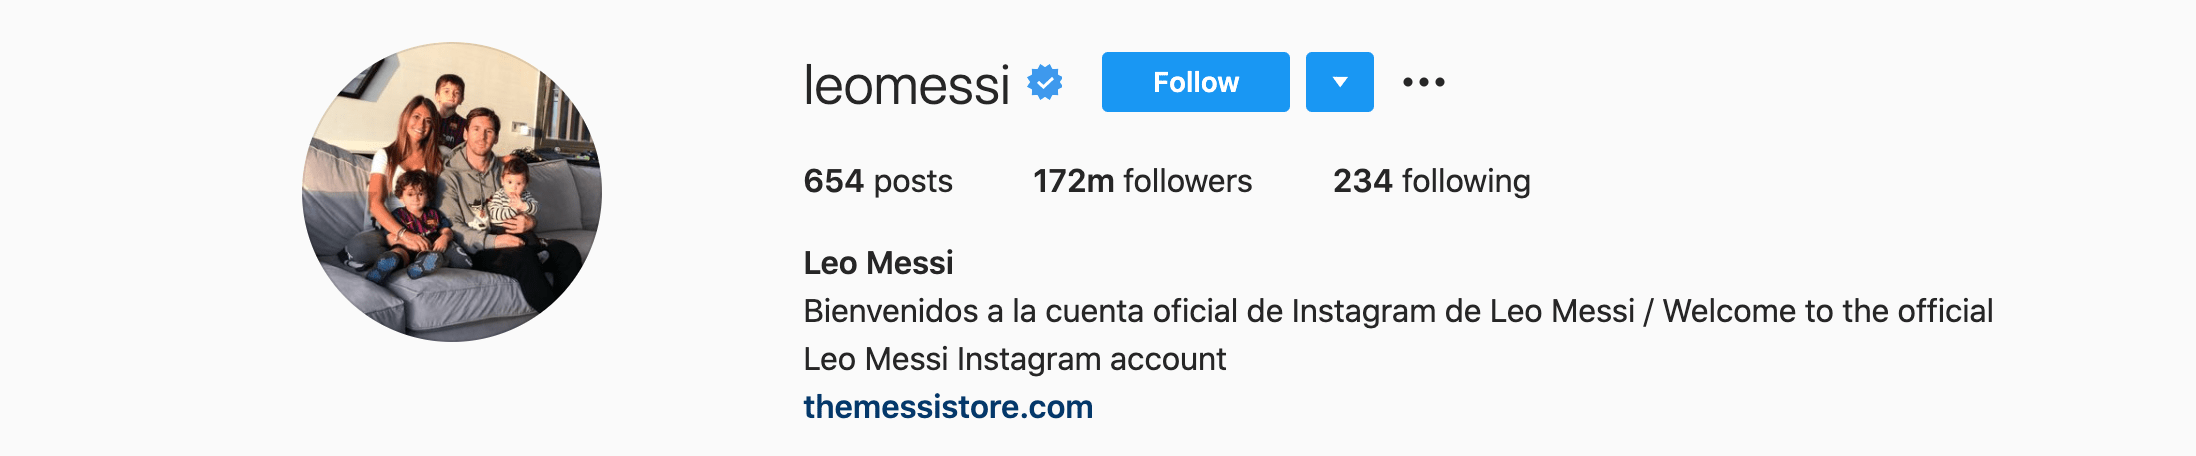 Top Instagram Influencers - LEO MESSI